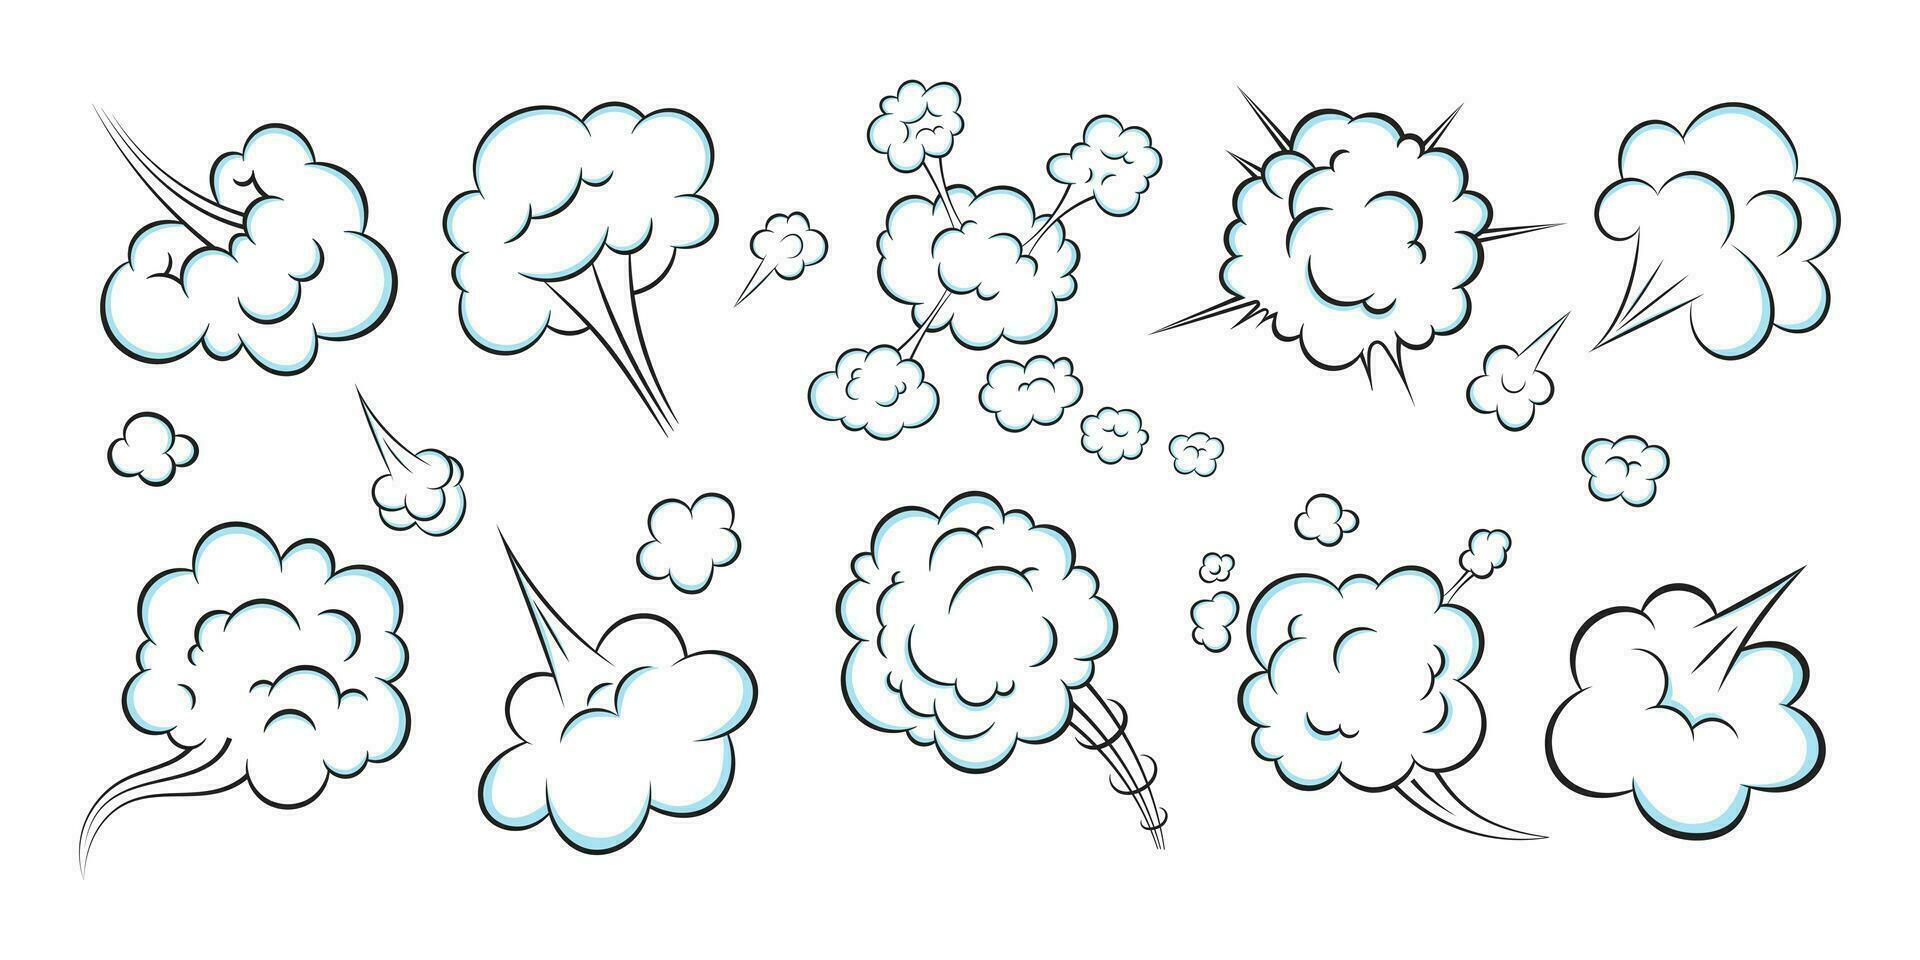 set di illustrazioni vettoriali per il design in stile piatto della nuvola di scoreggia del fumetto di fumetti pop art odorosi.